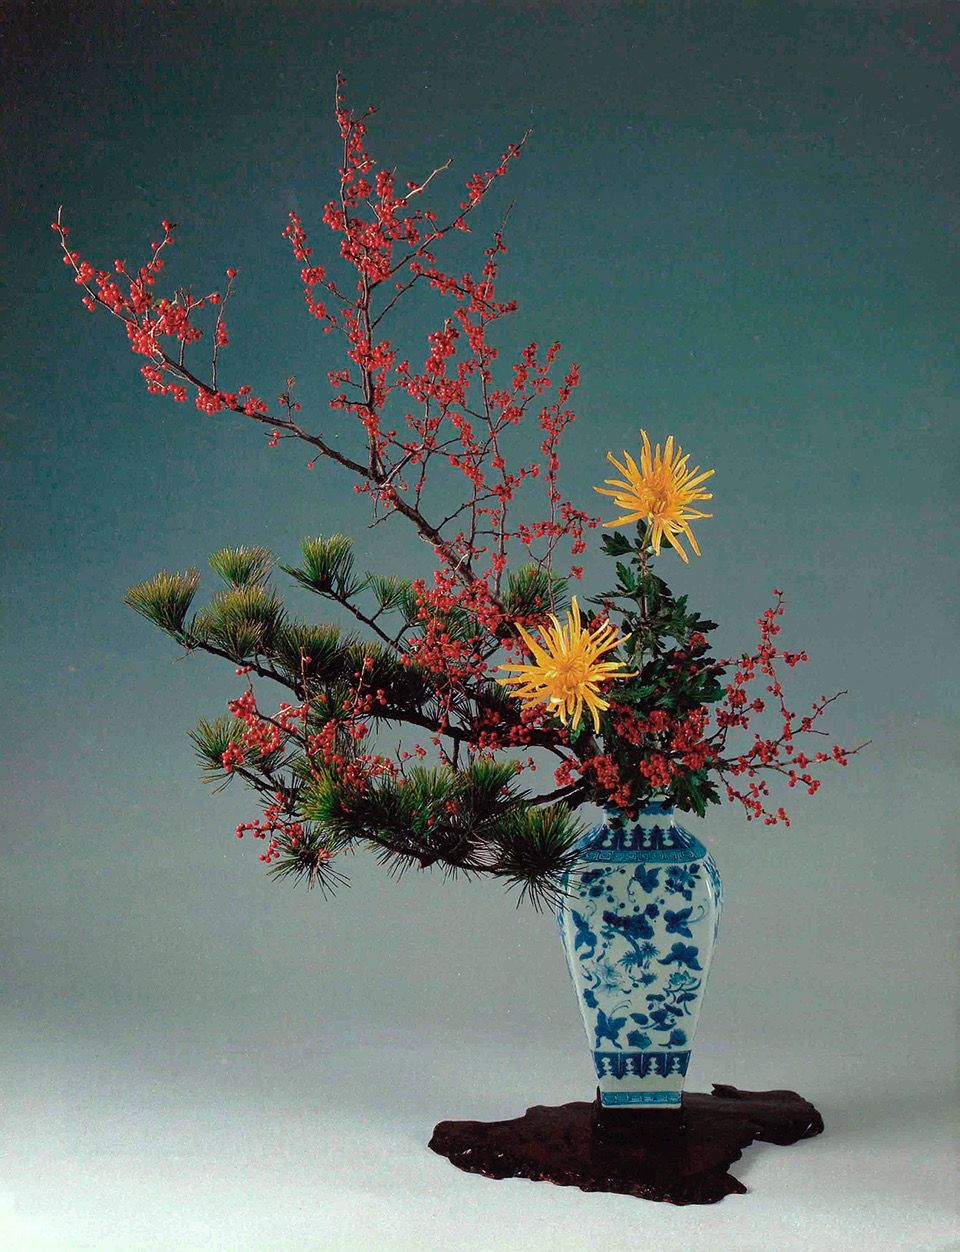 1月のいけばな 「小原豊雲、慶春の祝い花」【生け花、いけばな、生花、華道】